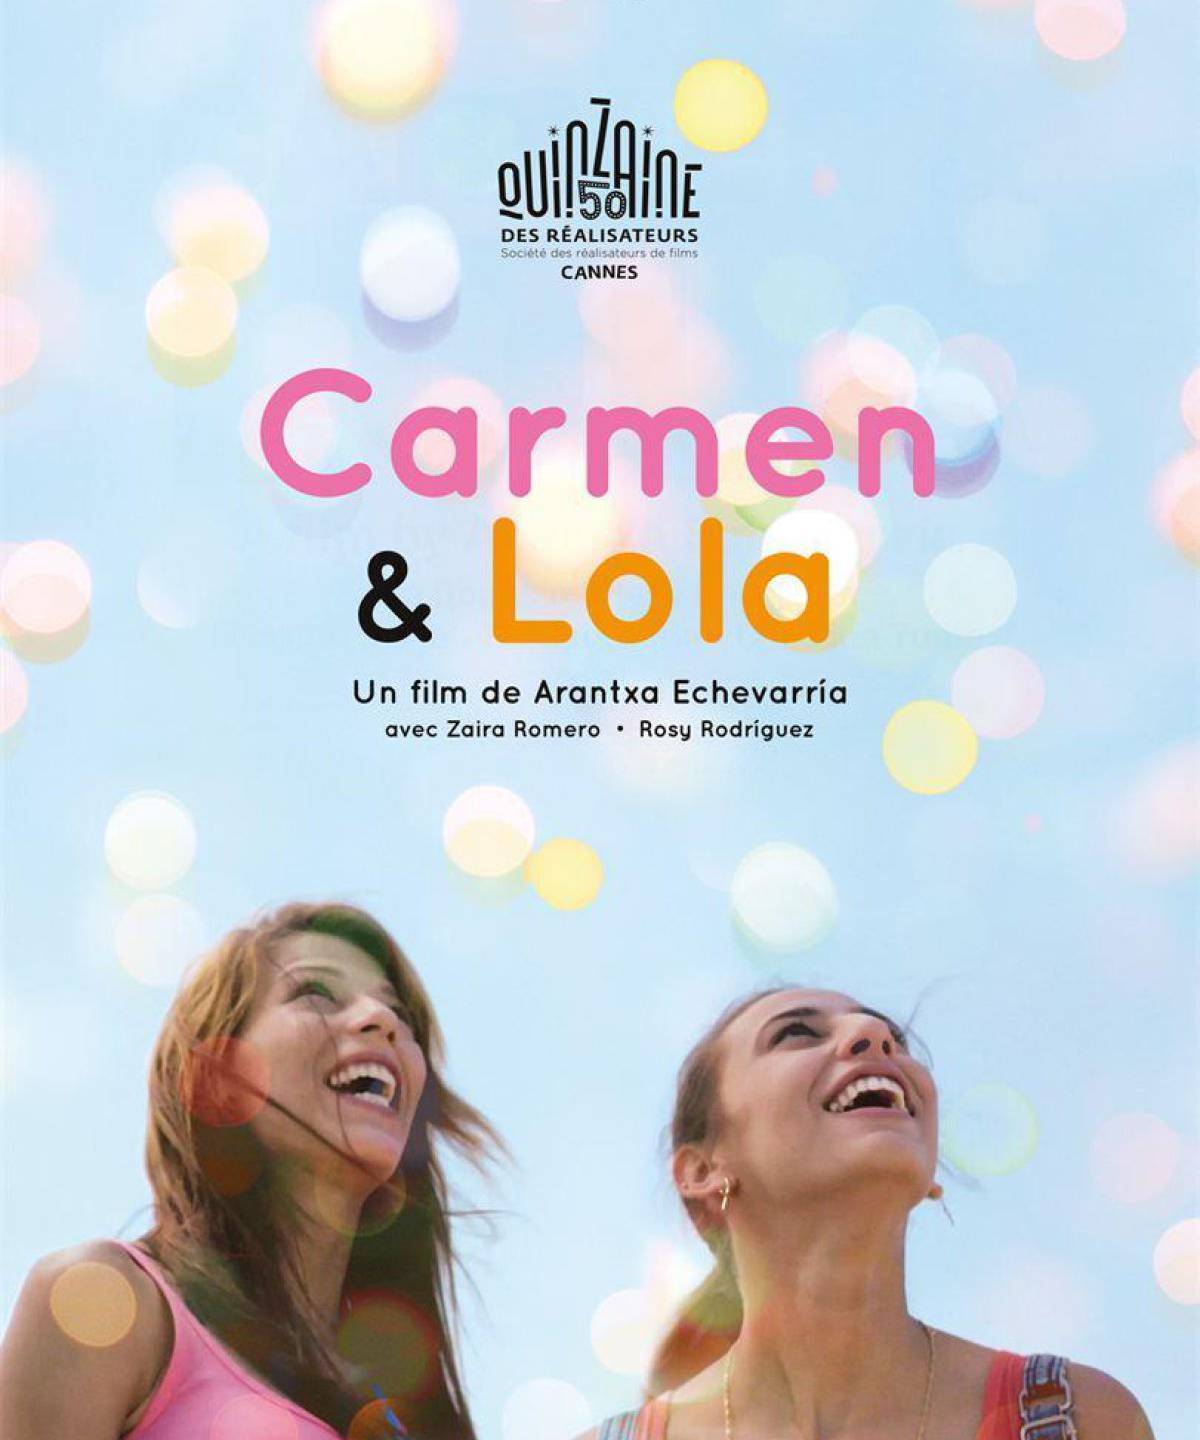 Zaira Romero (d) y Rossy Rodríguez (i) en el cartel promocional de &#039;Carmen y Lola&#039;